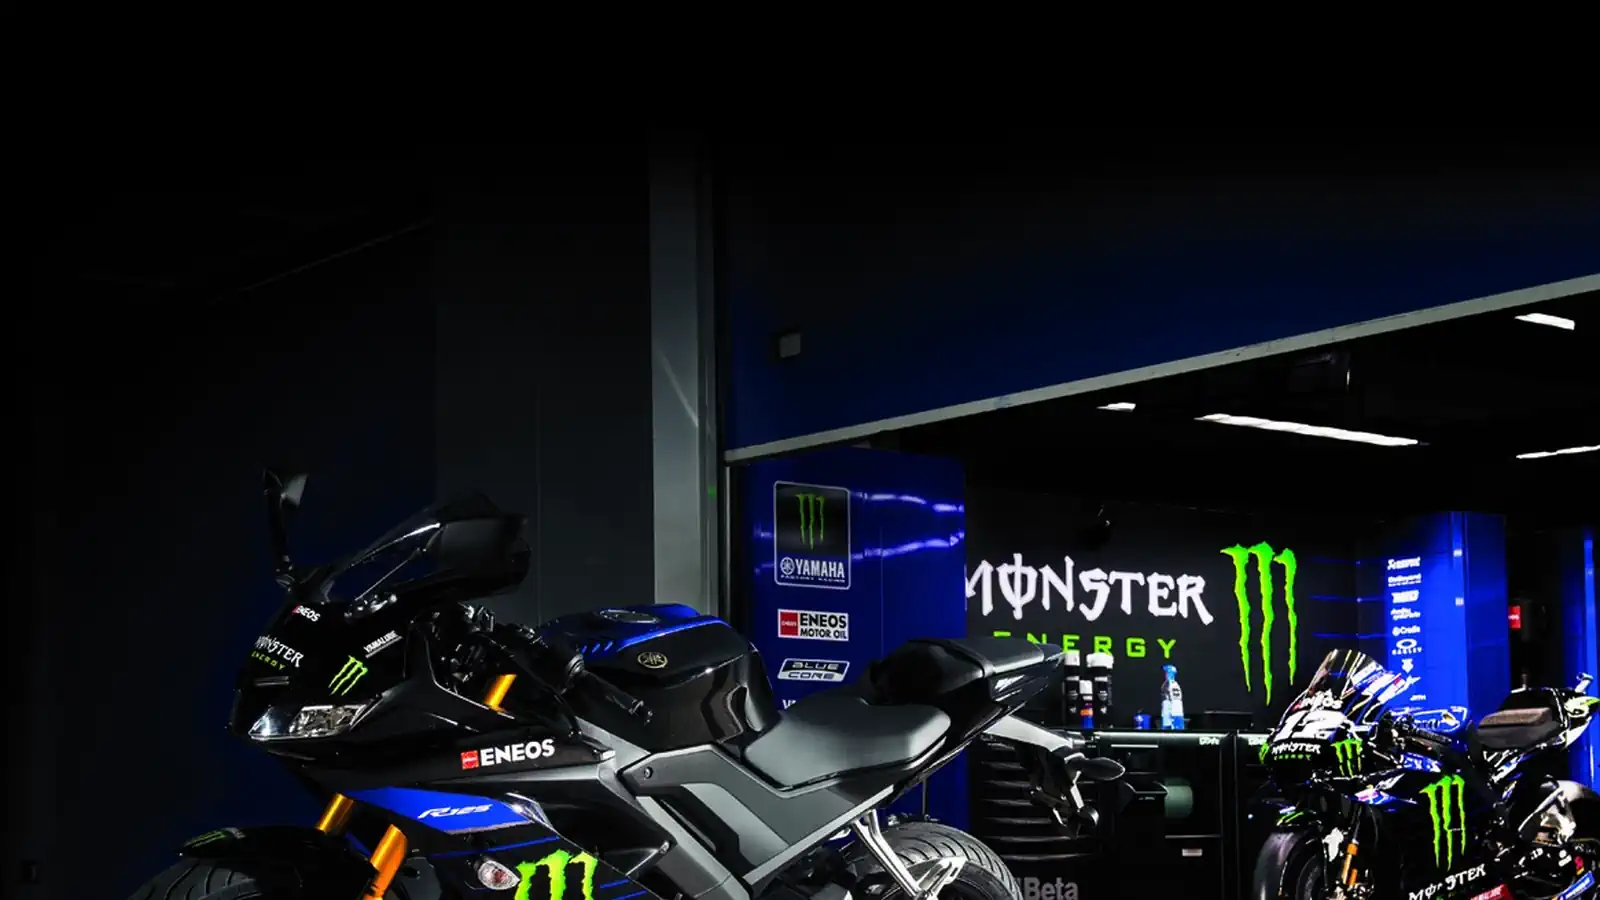 Monster nagradna igra: Osvoji YZF-R125 Yamaha motor